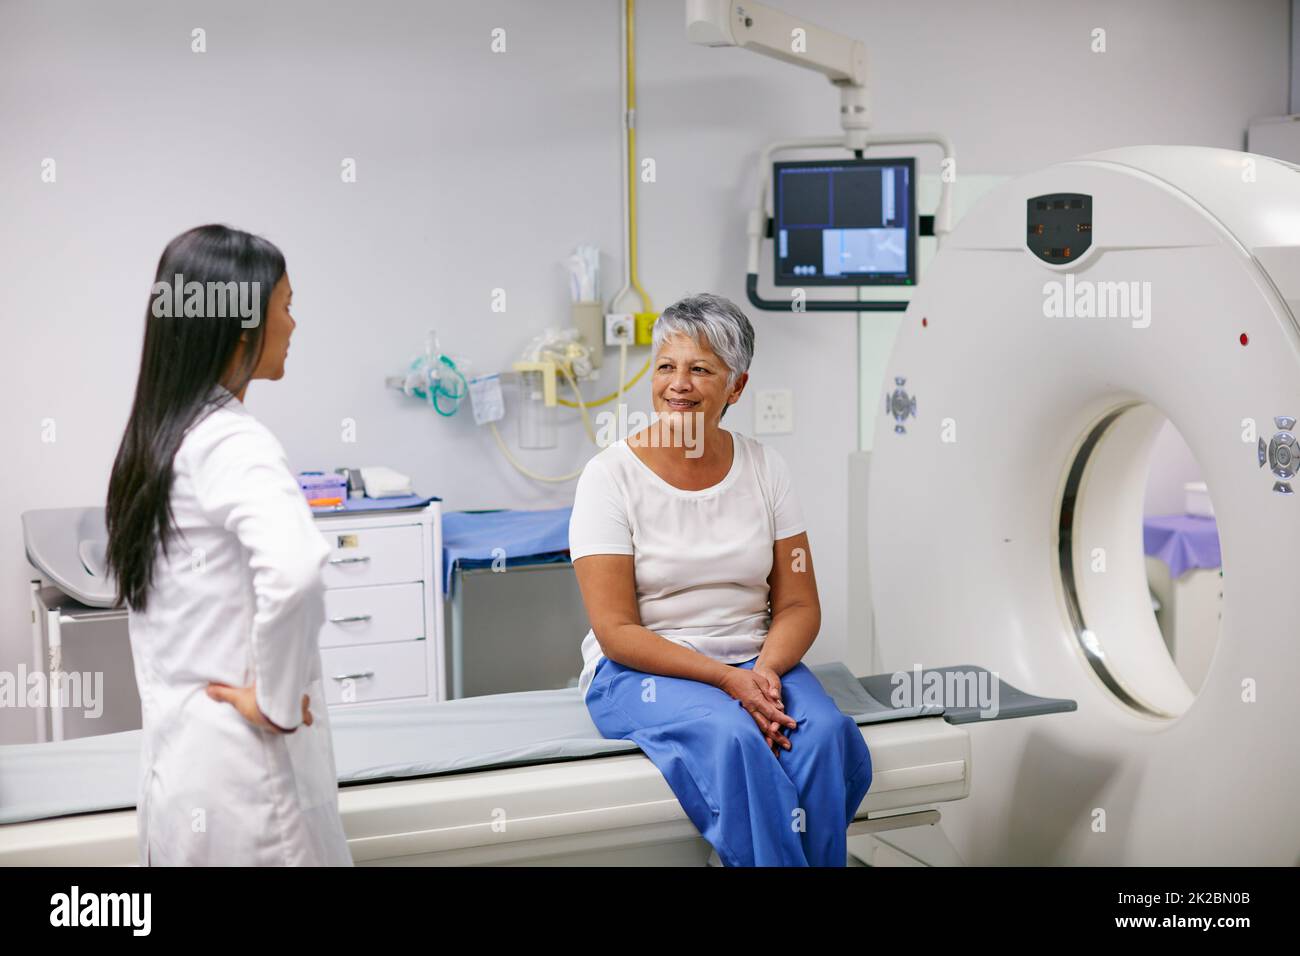 Laissez-moi vous expliquer comment cela fonctionne Prise de vue d'une femme âgée parlant avec un médecin avant et IRM. Banque D'Images